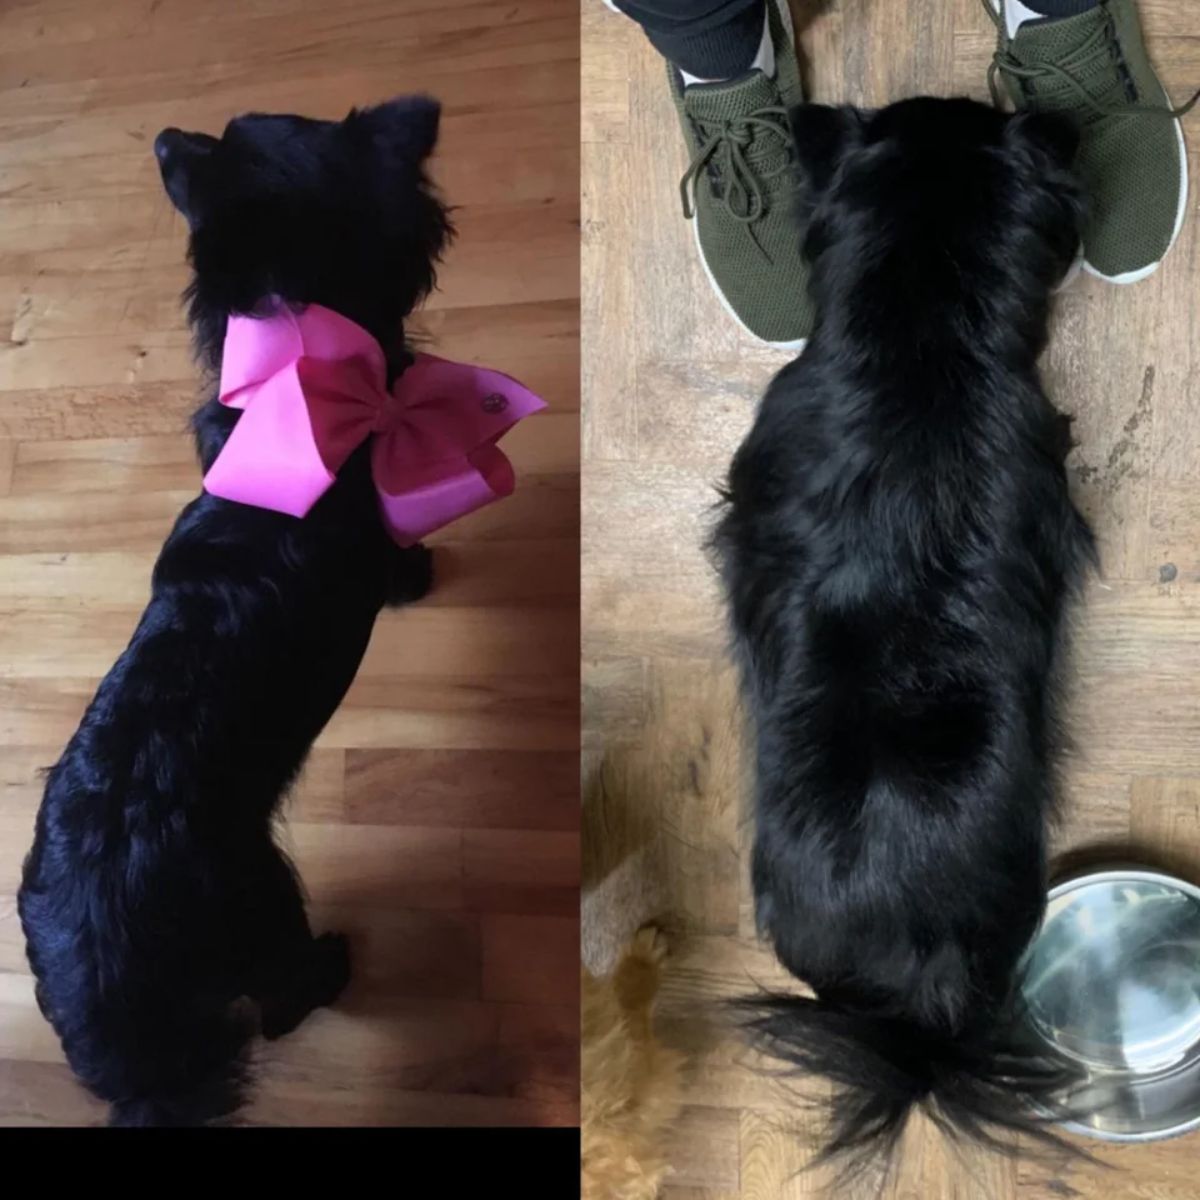 2 photos of a black dog